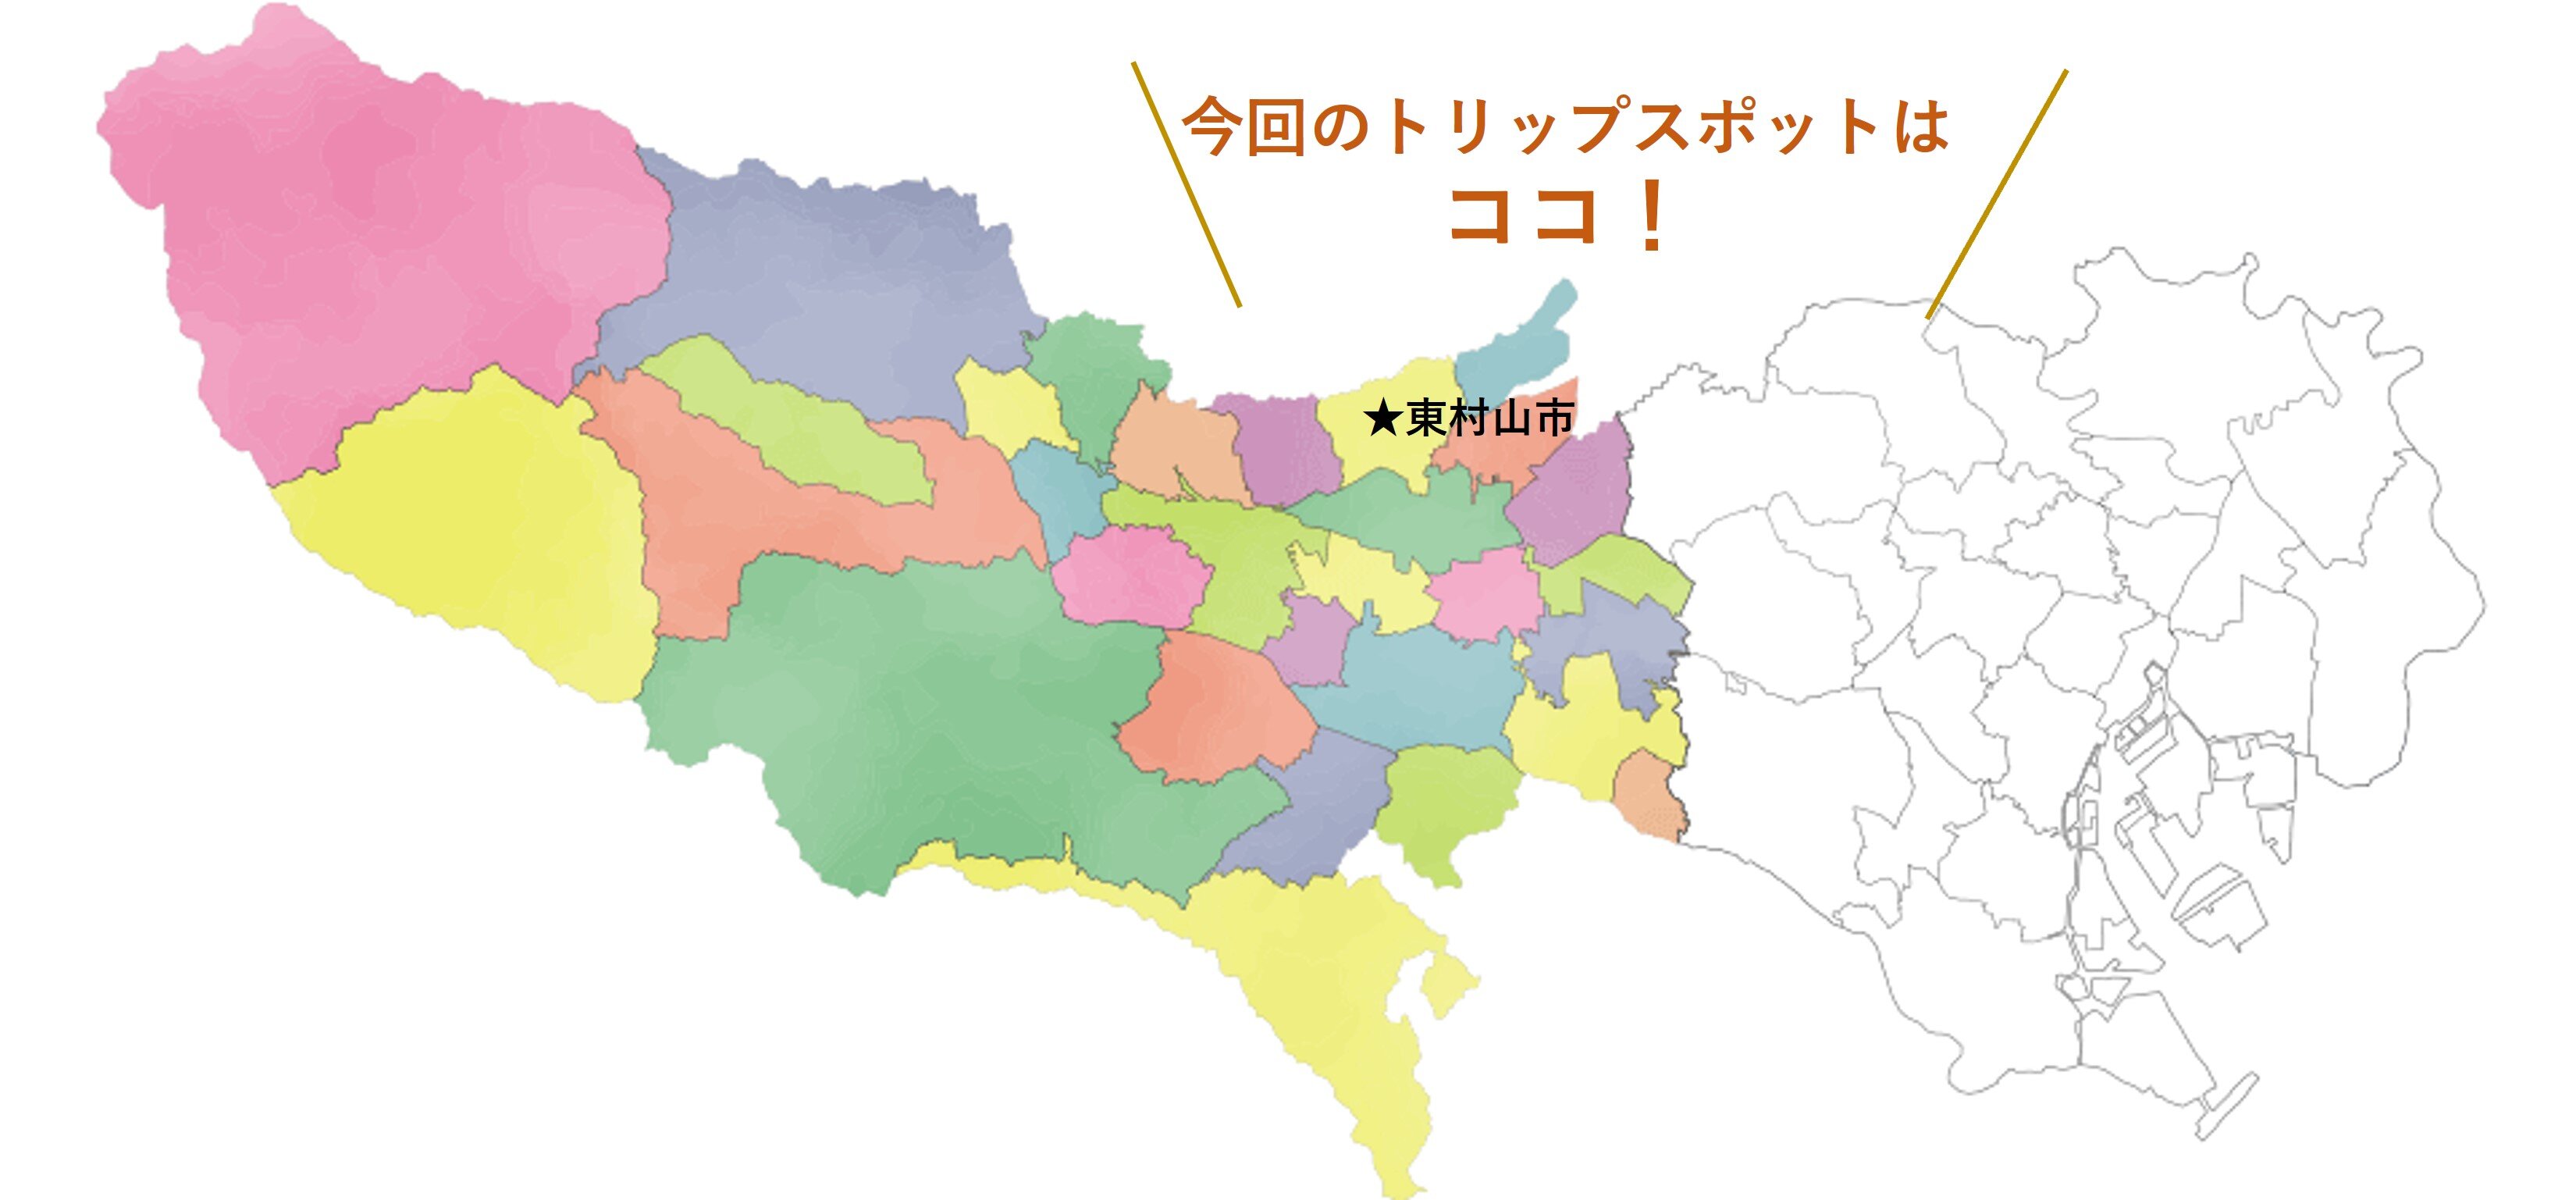 tama-higashimurayama-map.jpg